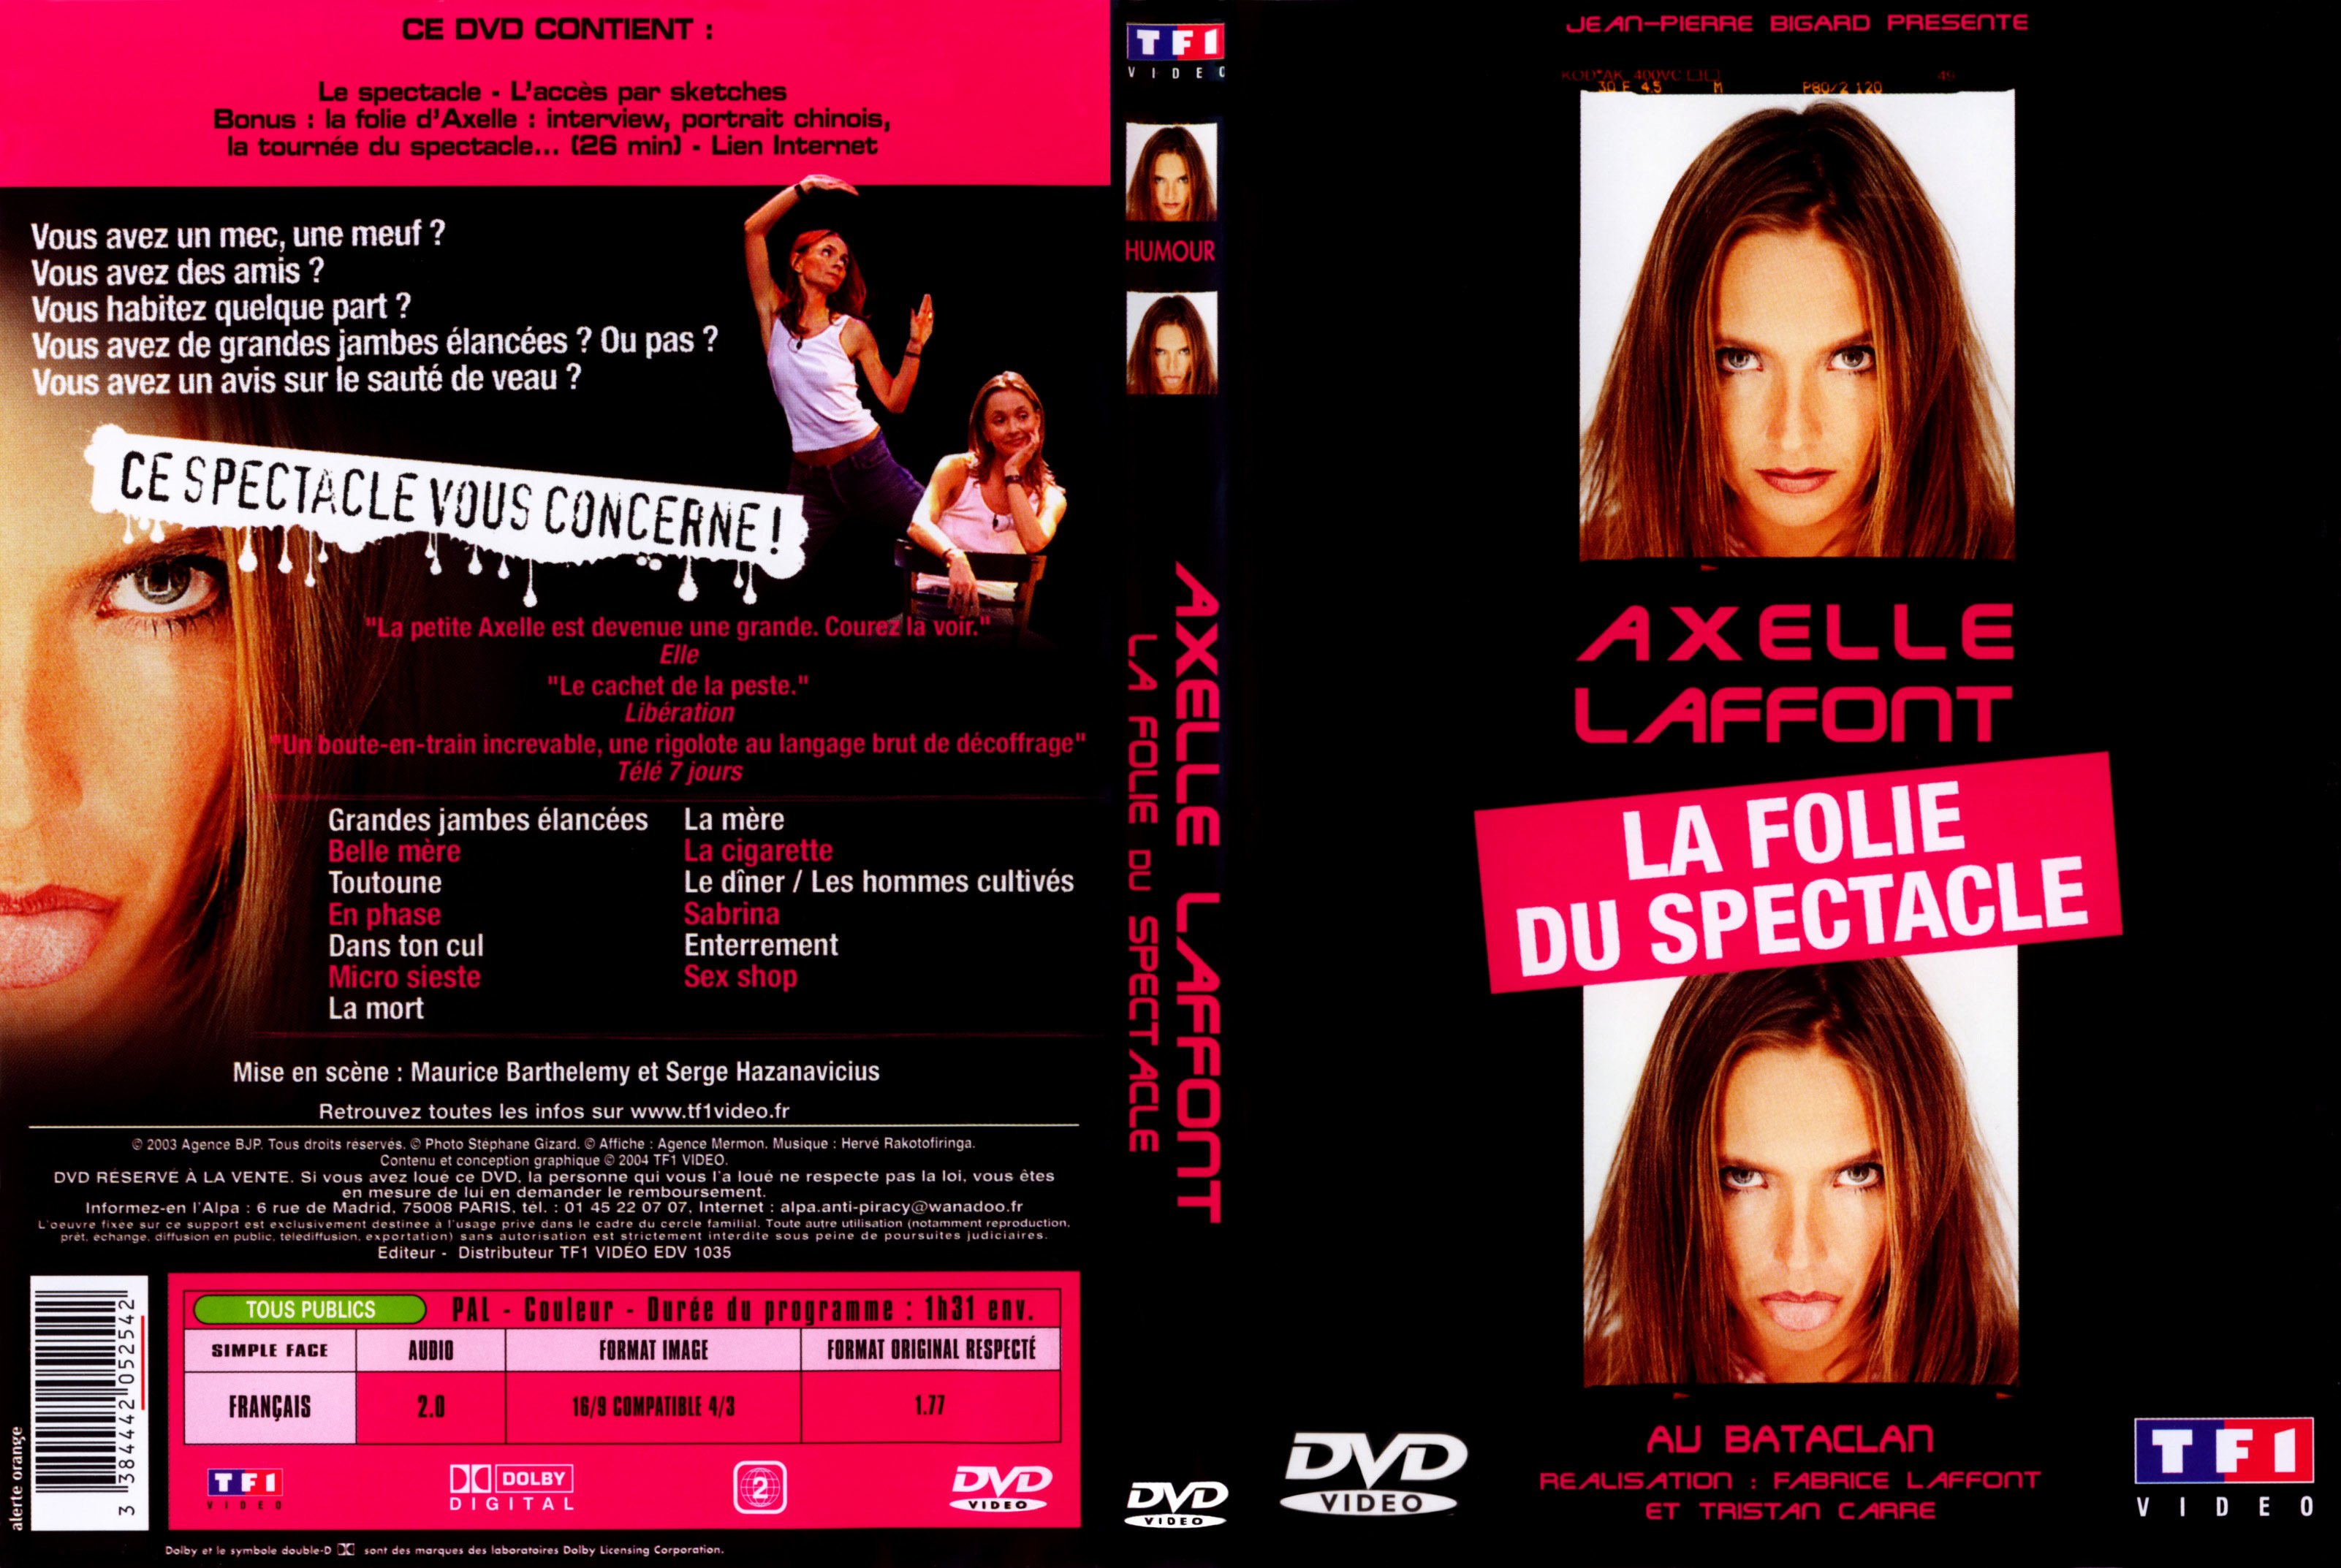 Jaquette DVD Axelle Lafont La folie du spectacle